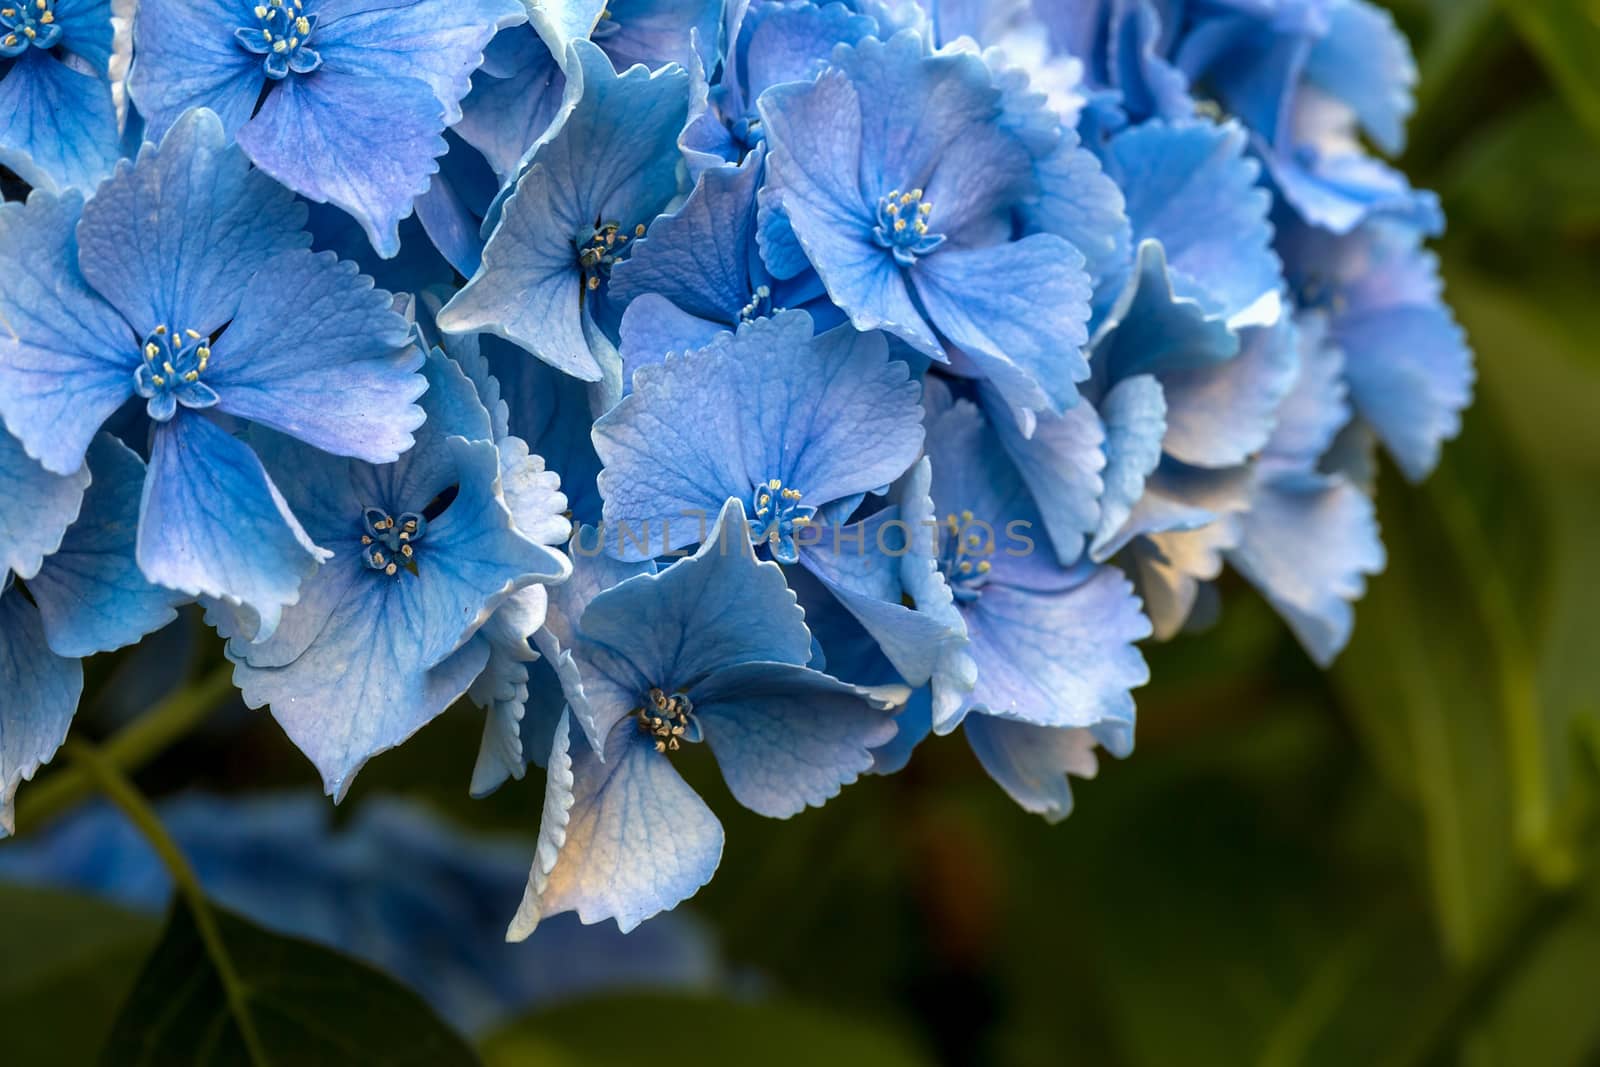 Blue Hydrangea Flower Macro by jpldesigns